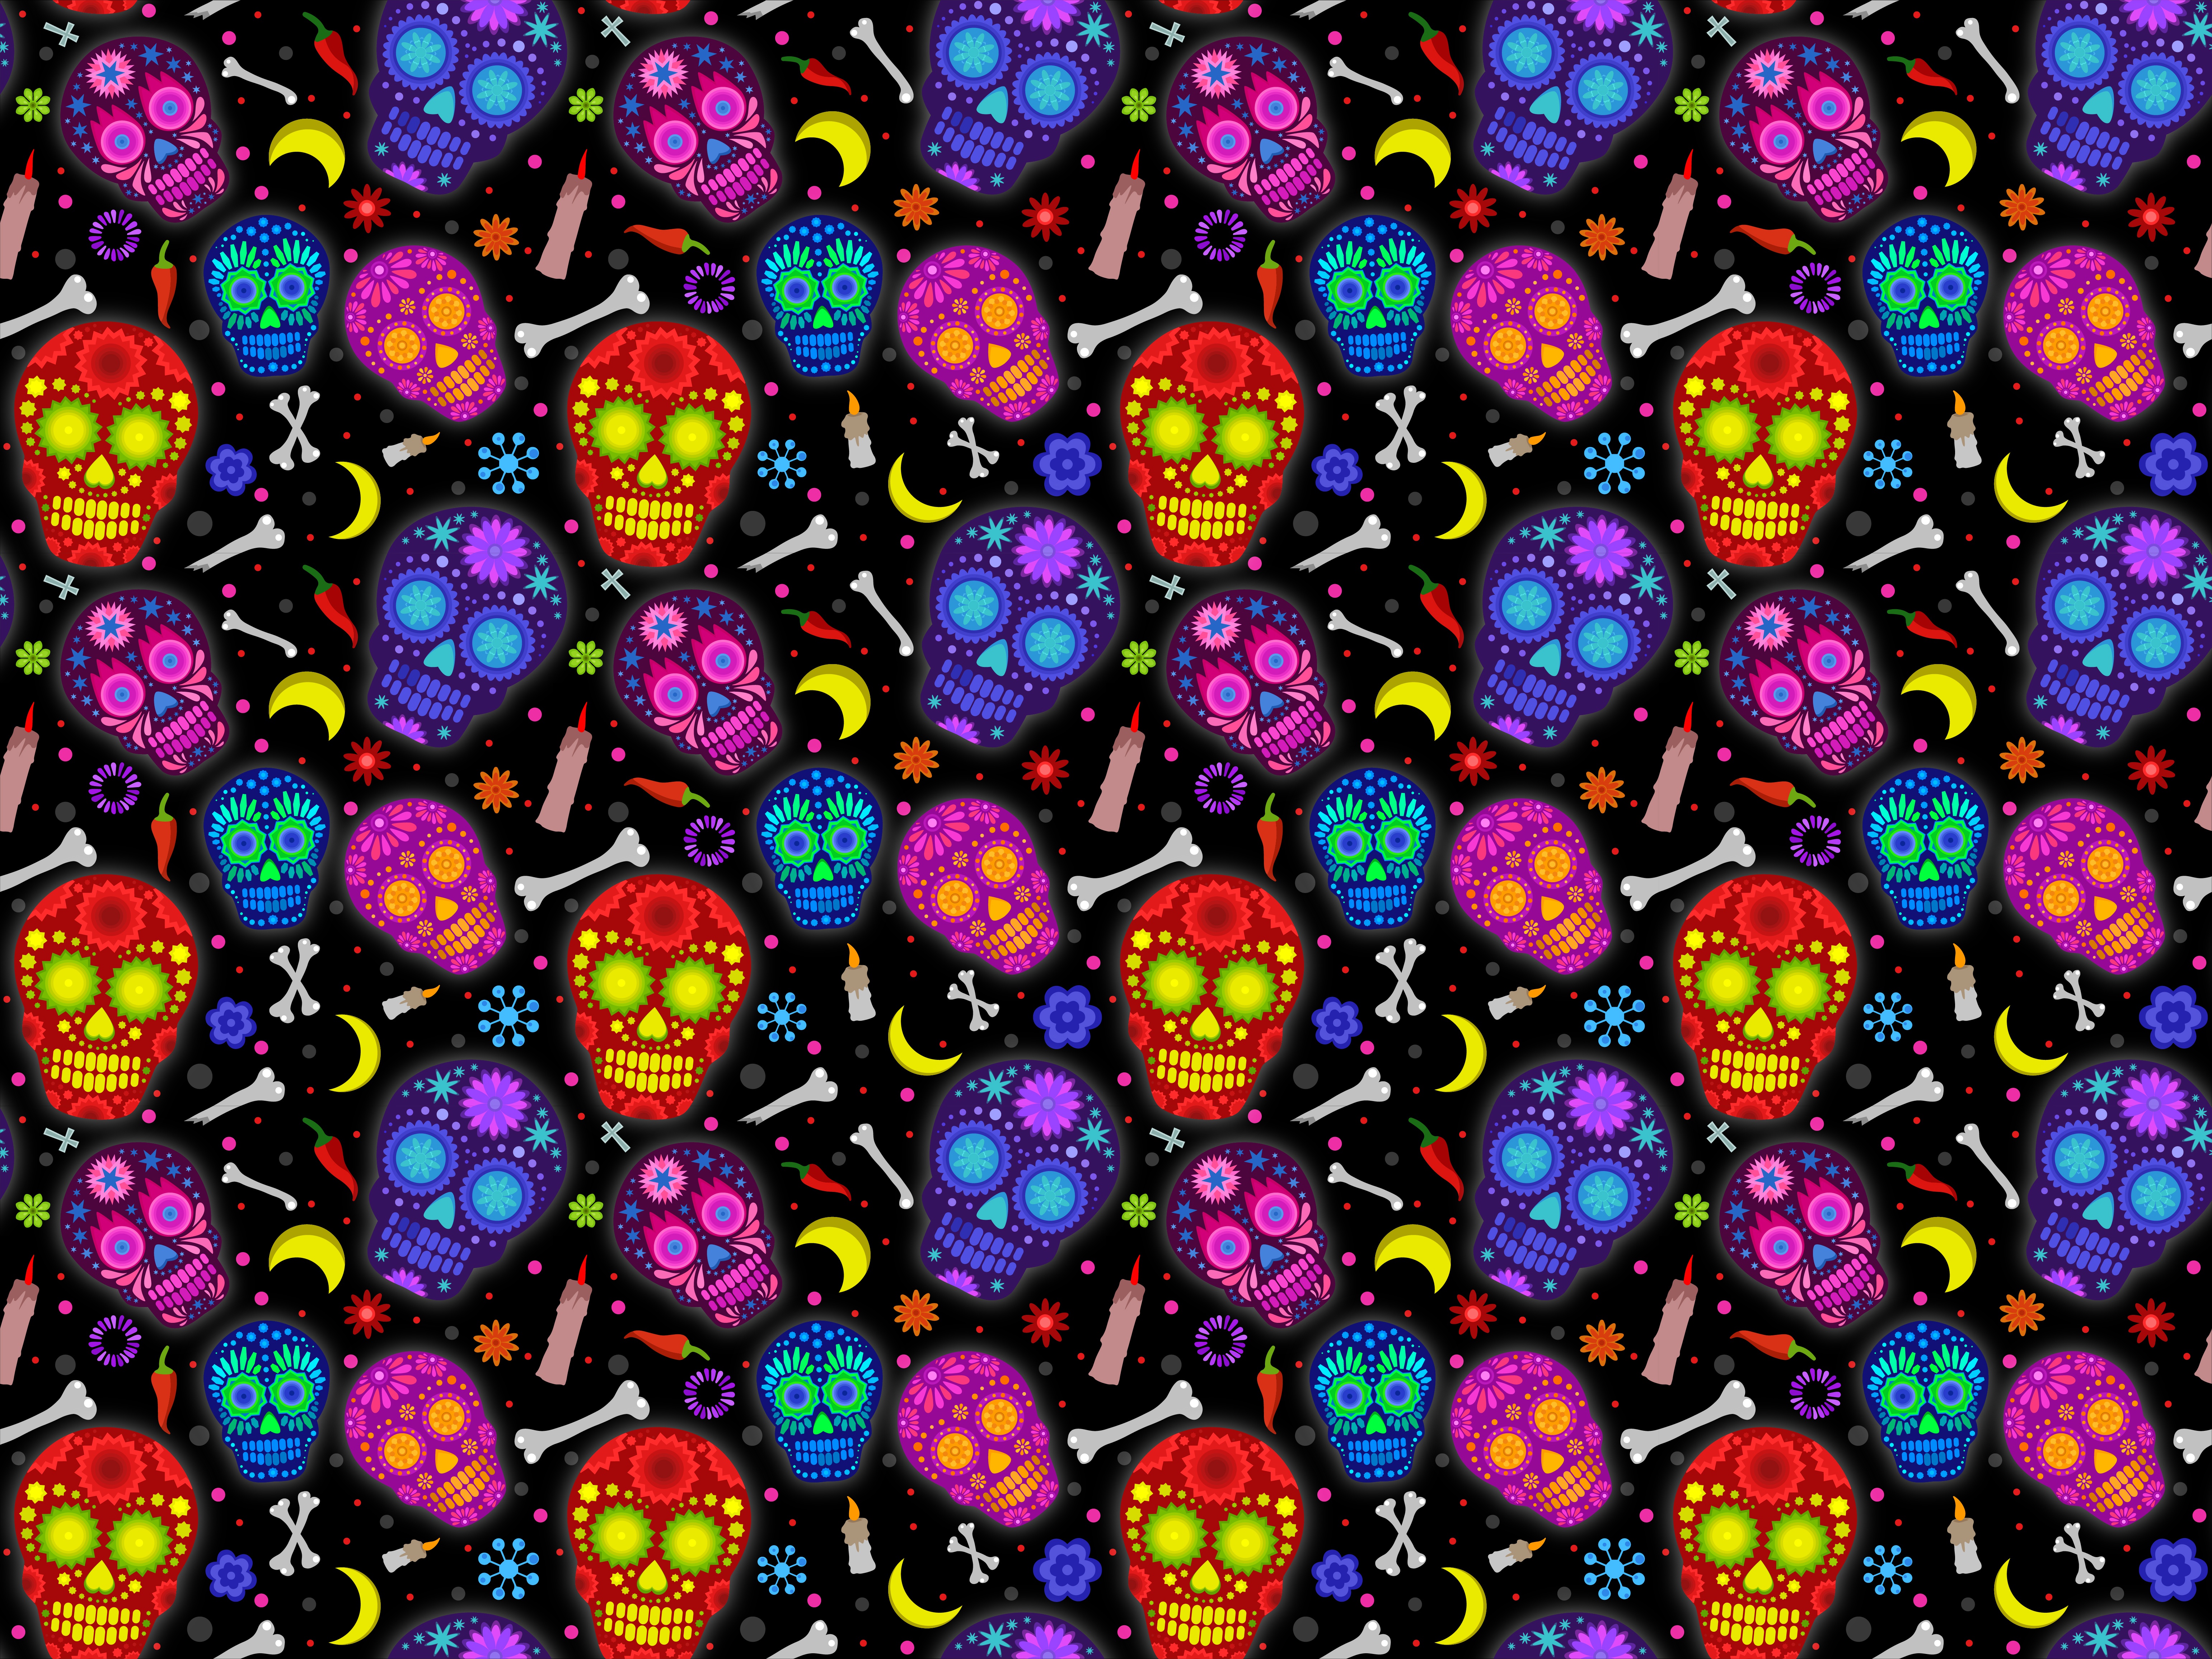 sugar skulls wallpaper